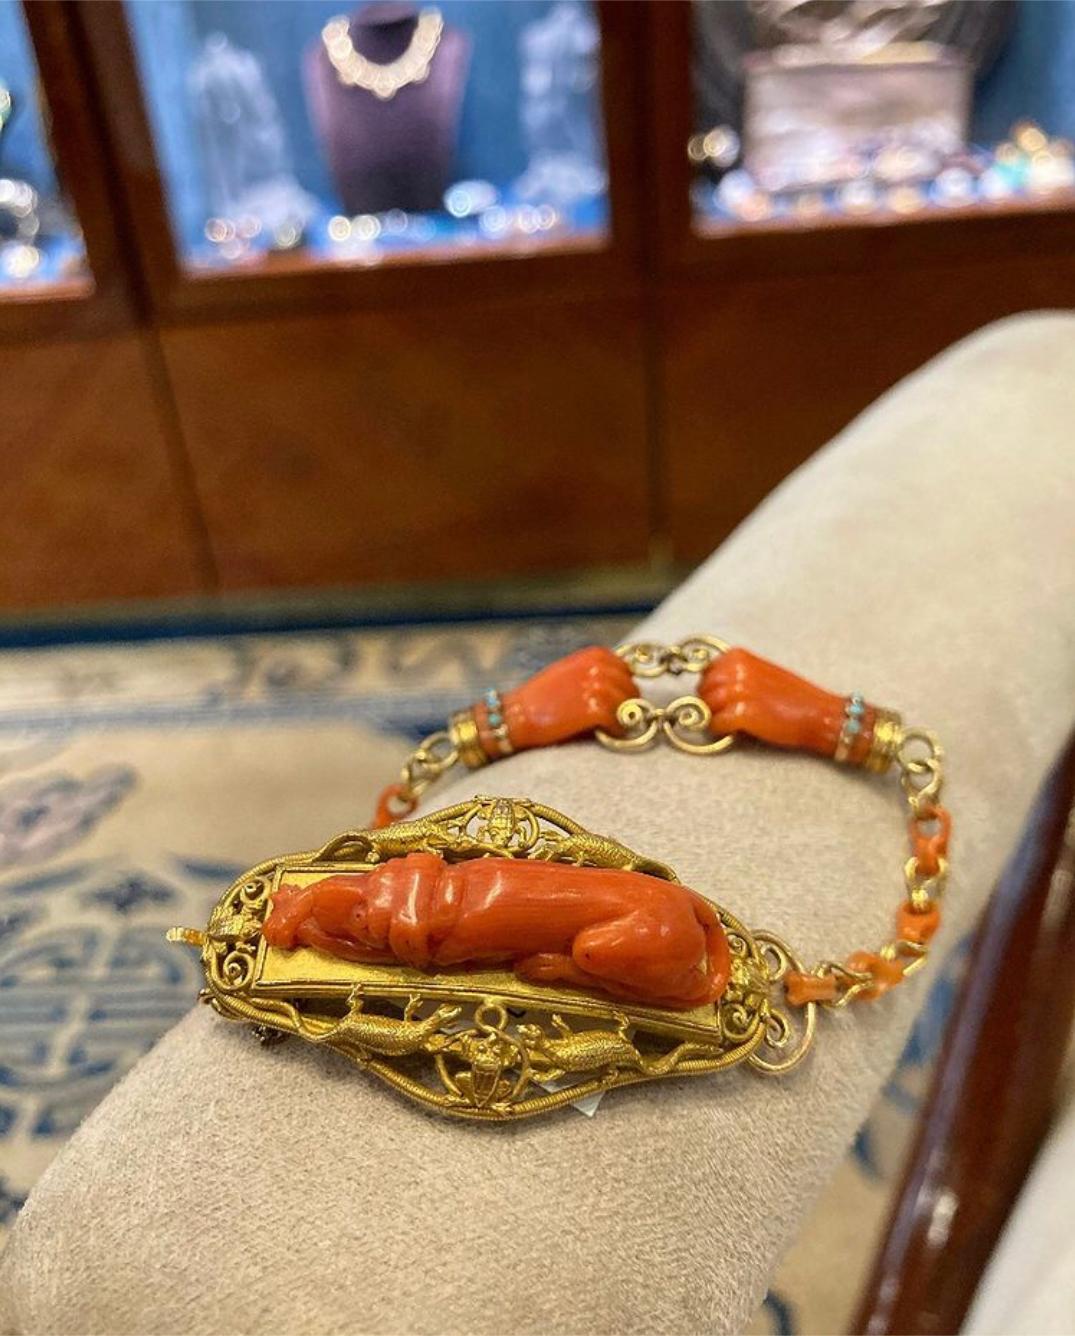 Eine antike neunzehnten Jahrhundert geschnitzt Korallen Jagd Armband mit Türkis-Verzierung, in Gelbgold. In der Mitte des Armbands ist ein Hund abgebildet, der von Eidechsen und Fröschen begleitet wird, und auf der Unterseite des Armbands befinden